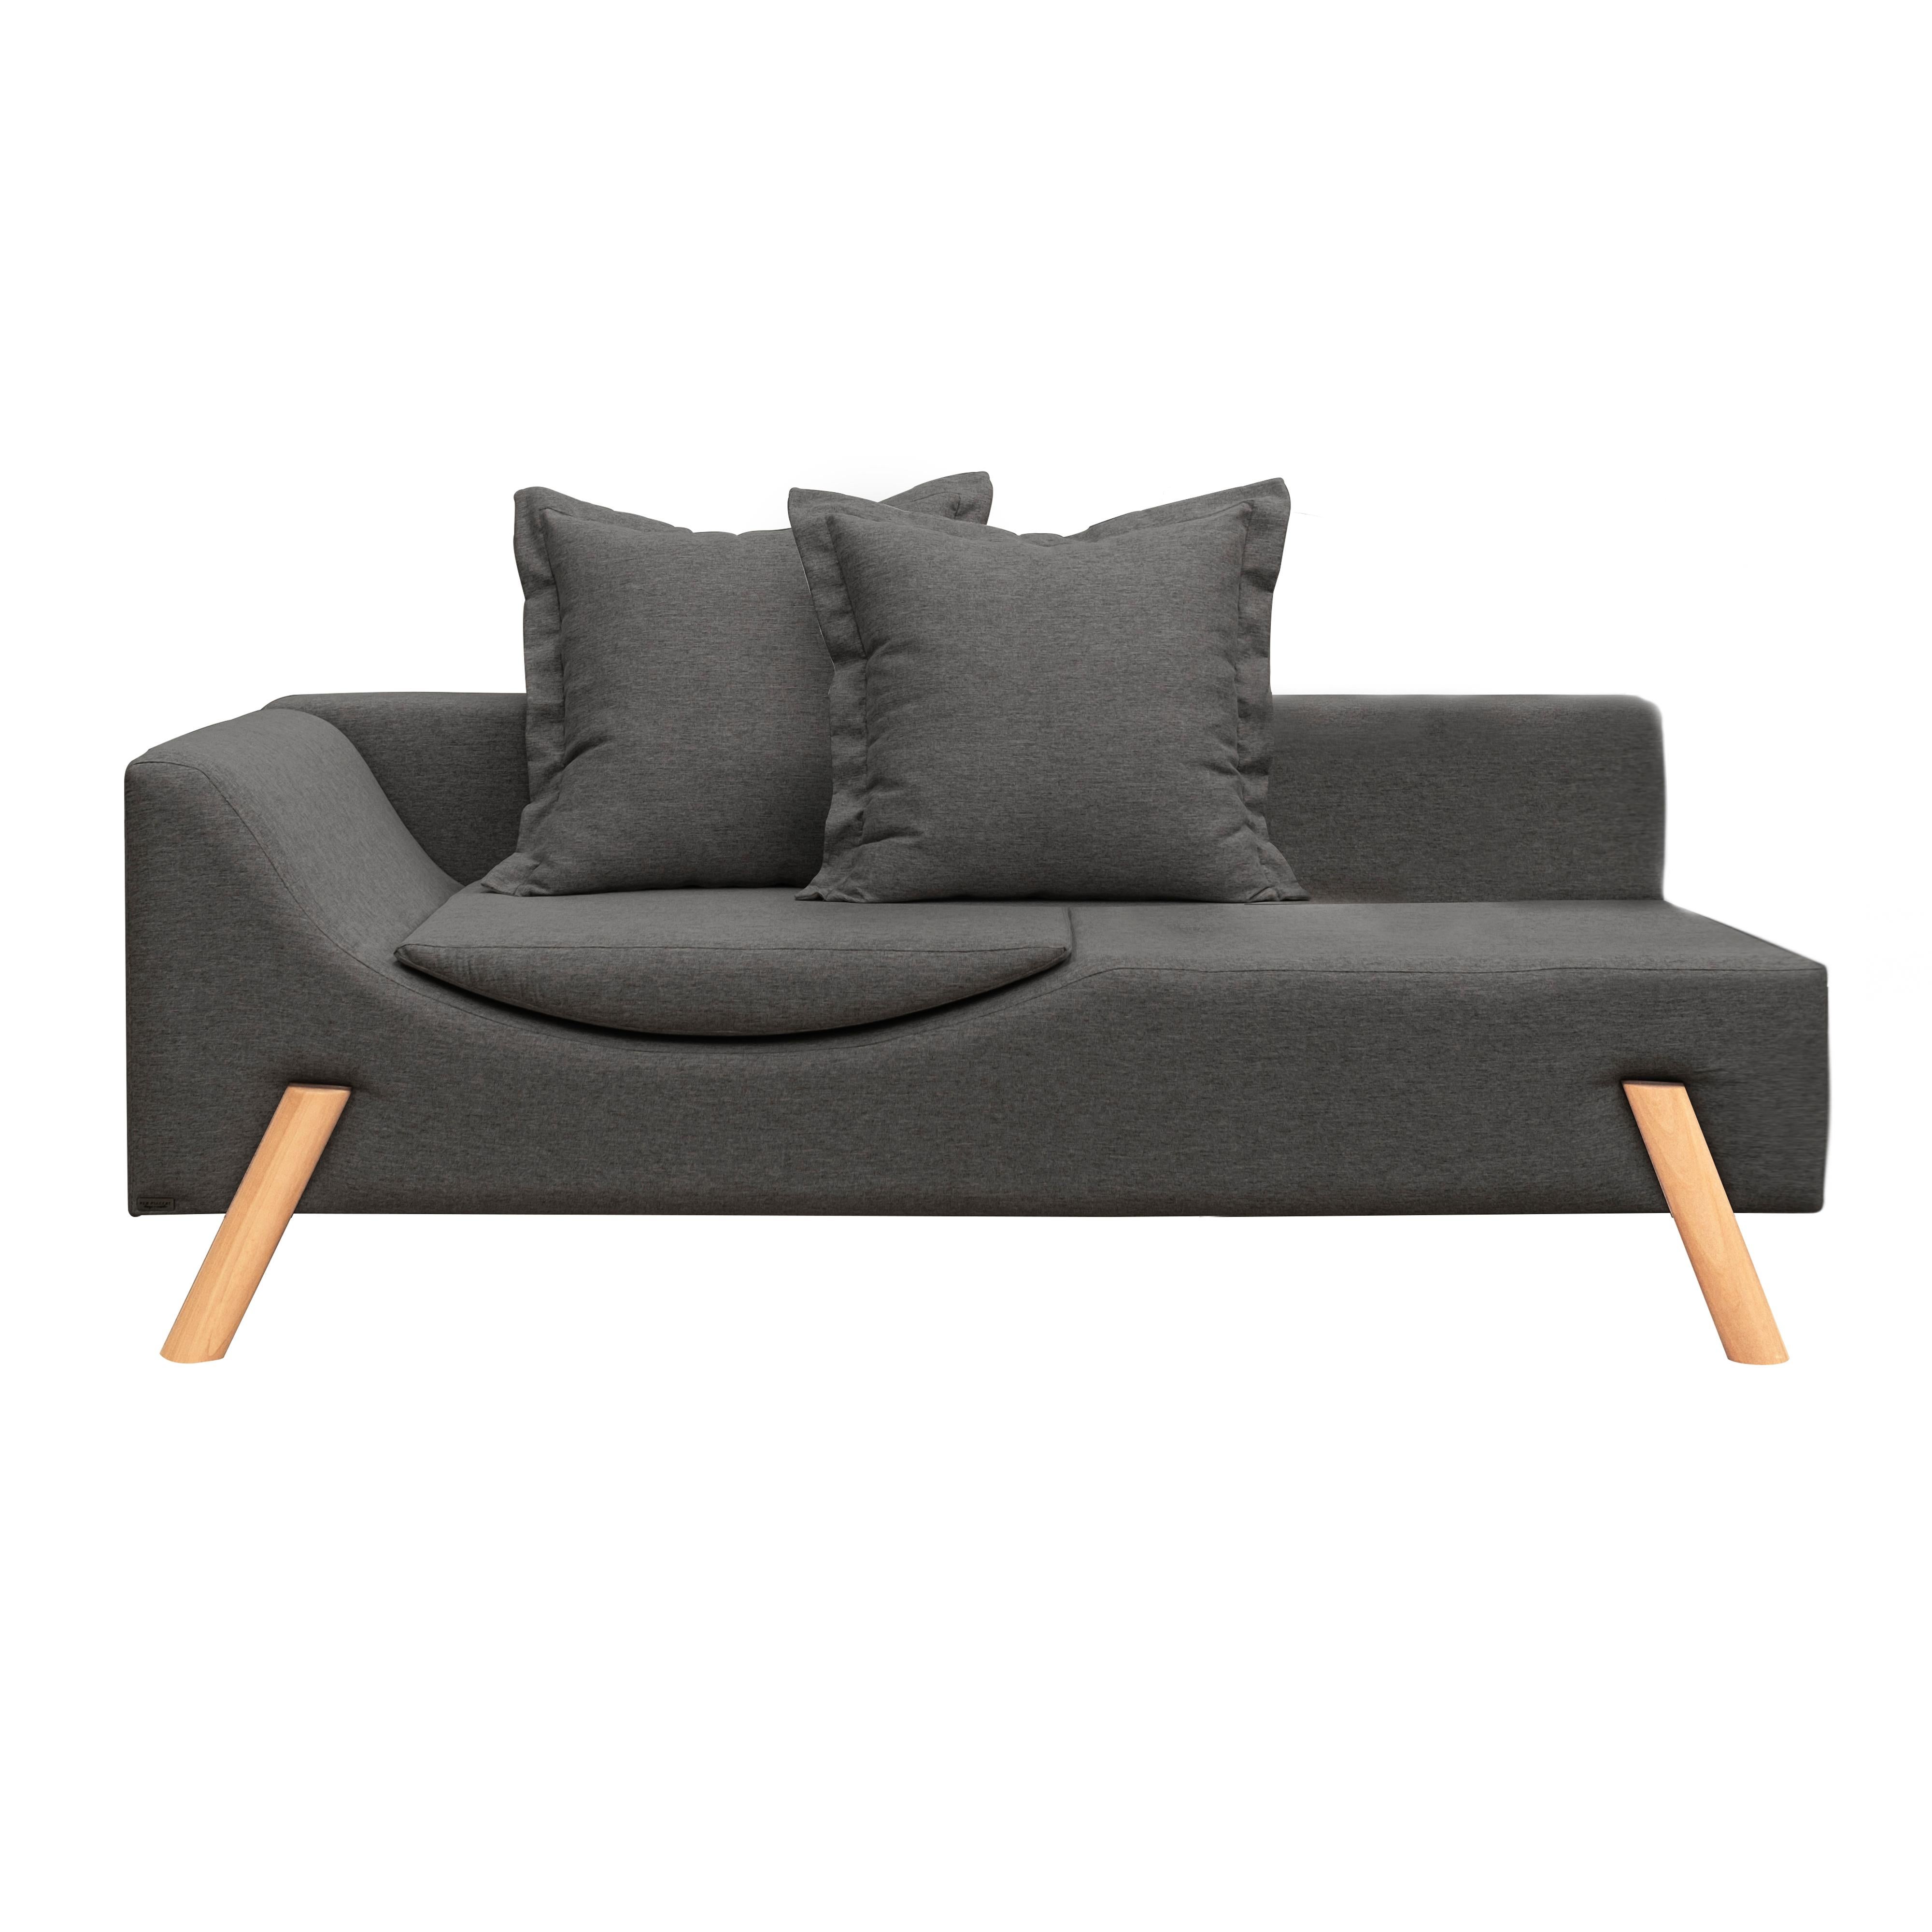 Le Flag Couch est une pièce intelligente et multifonctionnelle.
Le canapé est doté d'un coussin intégré à l'assise, ce qui lui confère une double fonctionnalité : lorsqu'il est fermé, il fonctionne comme un canapé confortable pour s'asseoir, et